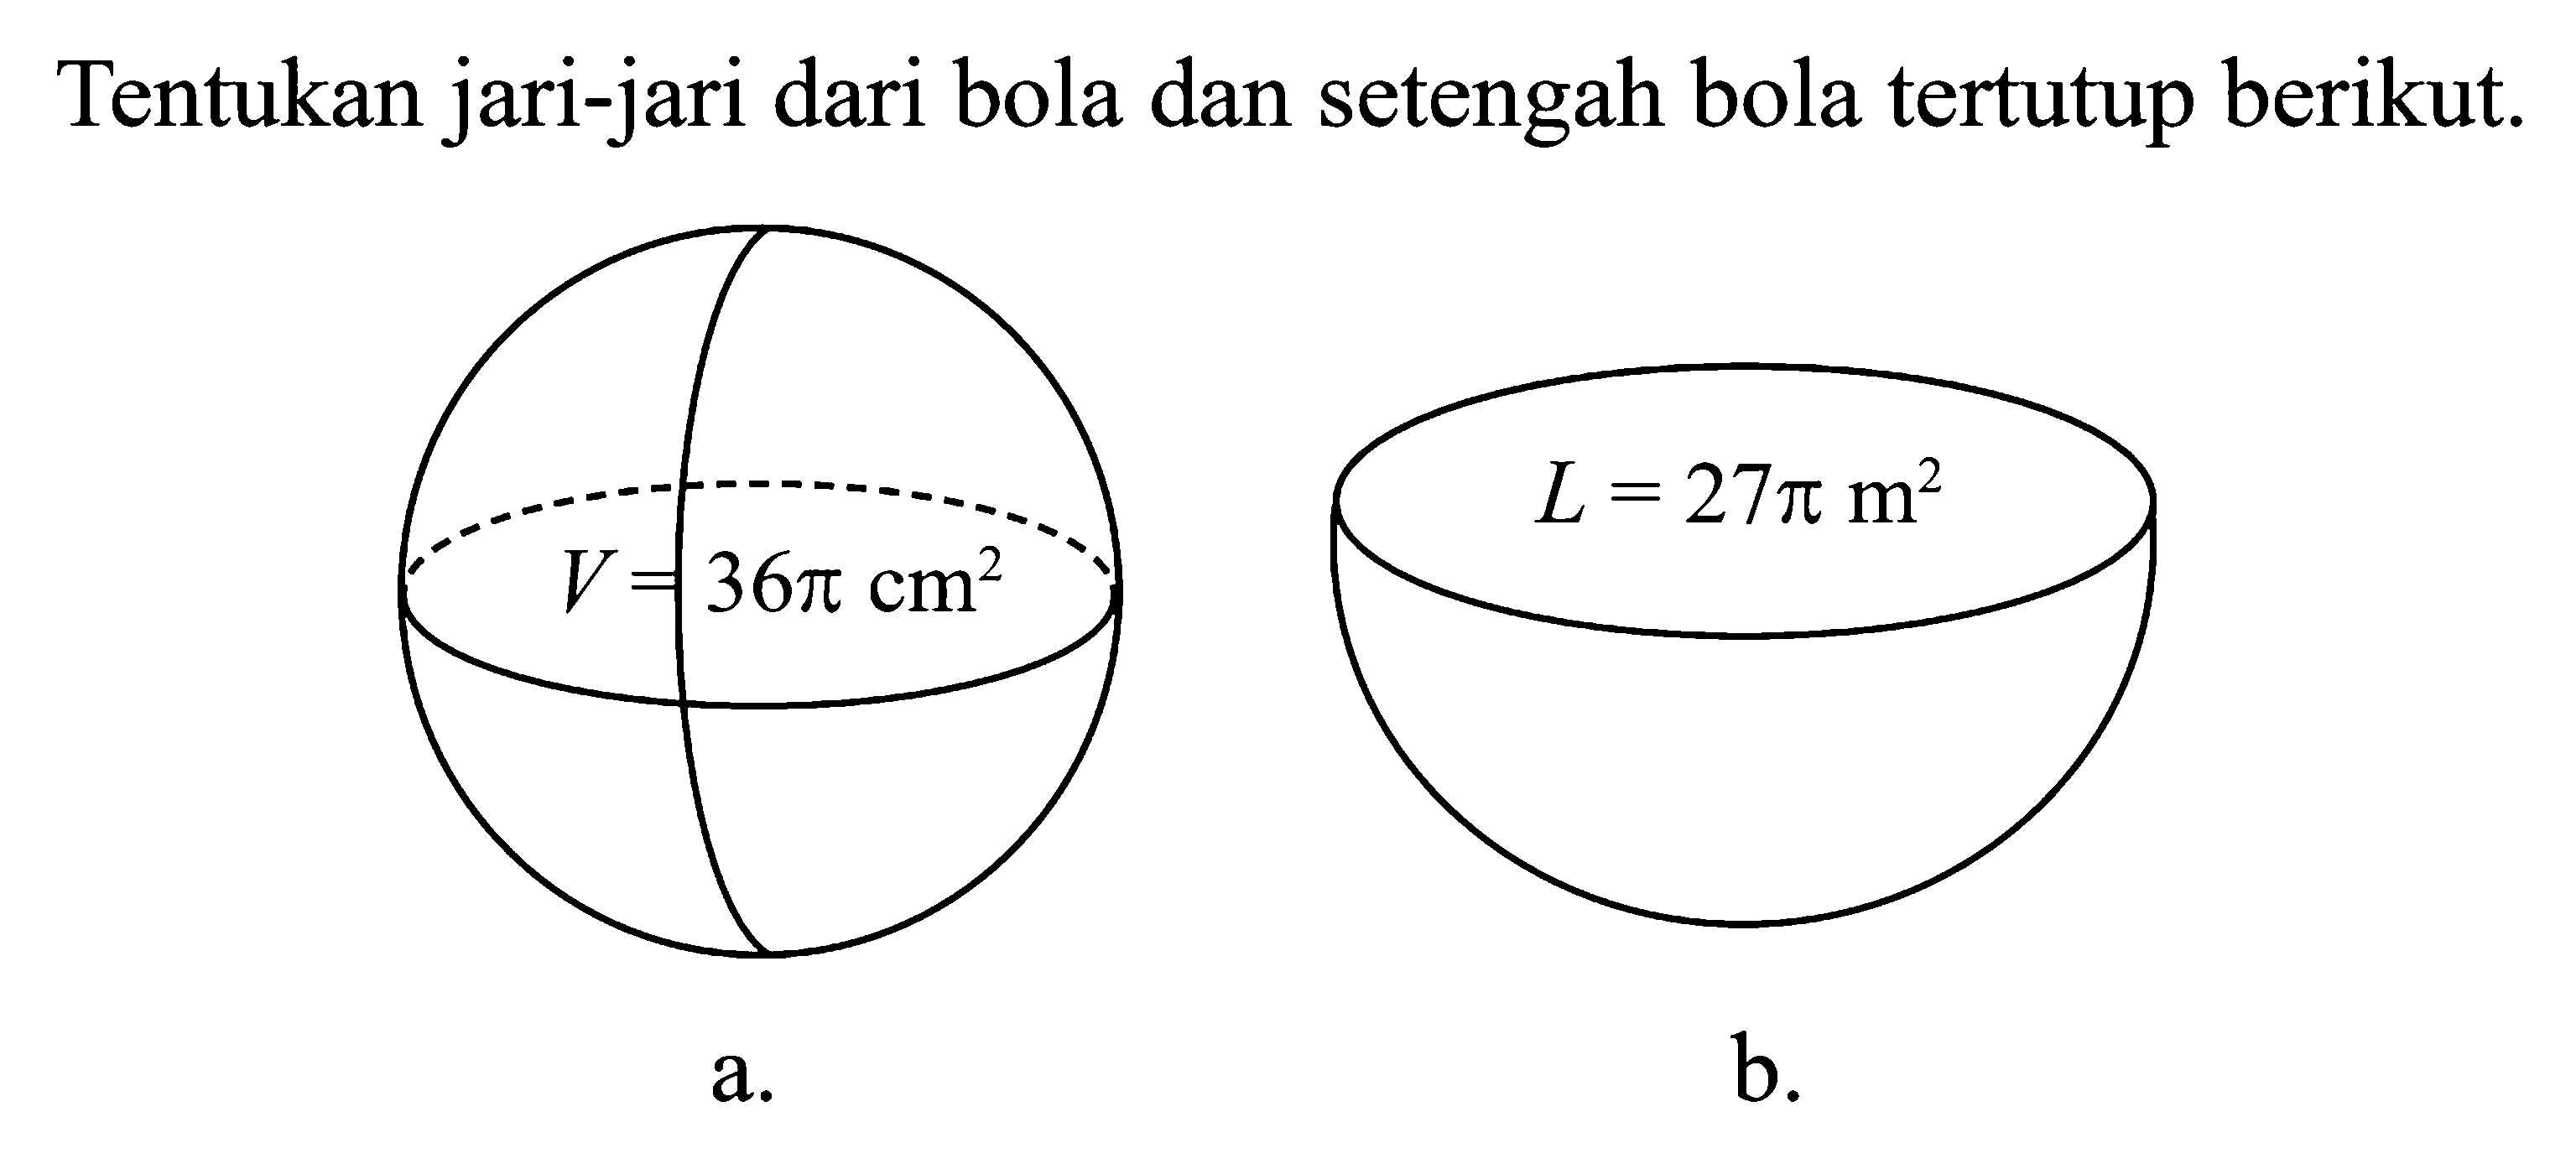 Tentukan jari-jari dari bola dan setengah bola tertutup berikut.a. V = 36pi cm^2b. L = 27pi m^2